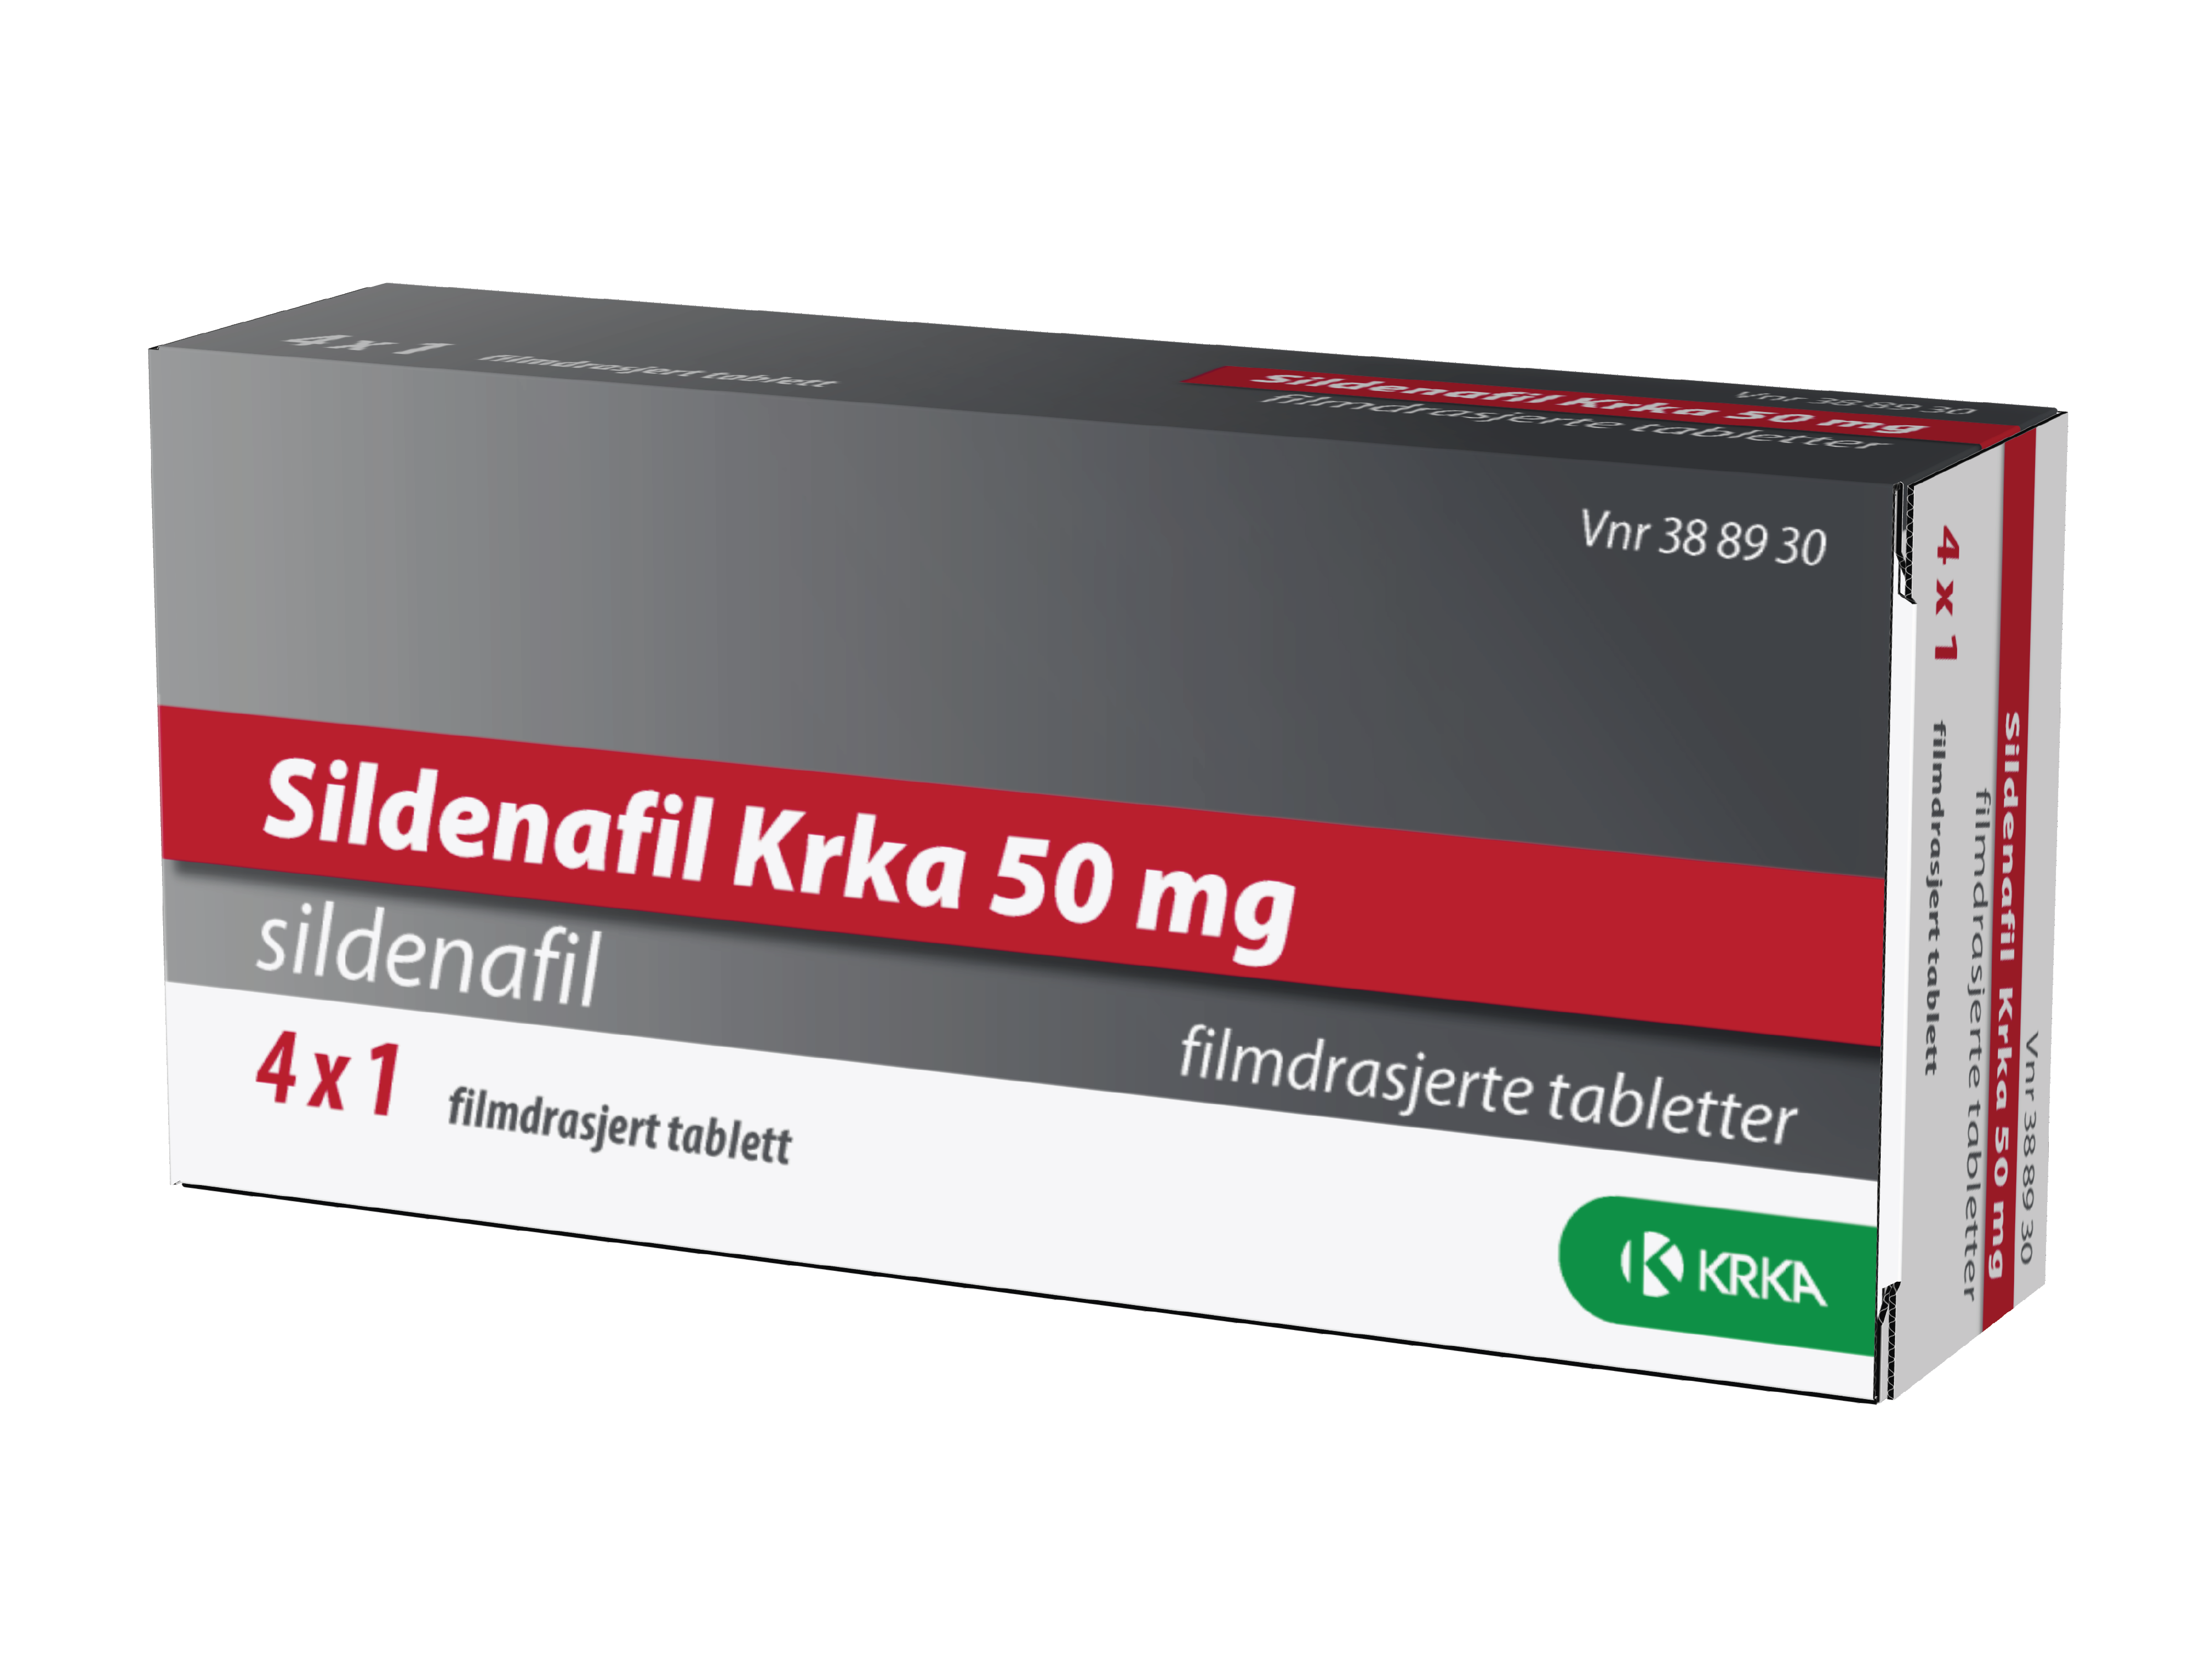 Sildenafil Krka 50 mg tabletter, 4 stk.